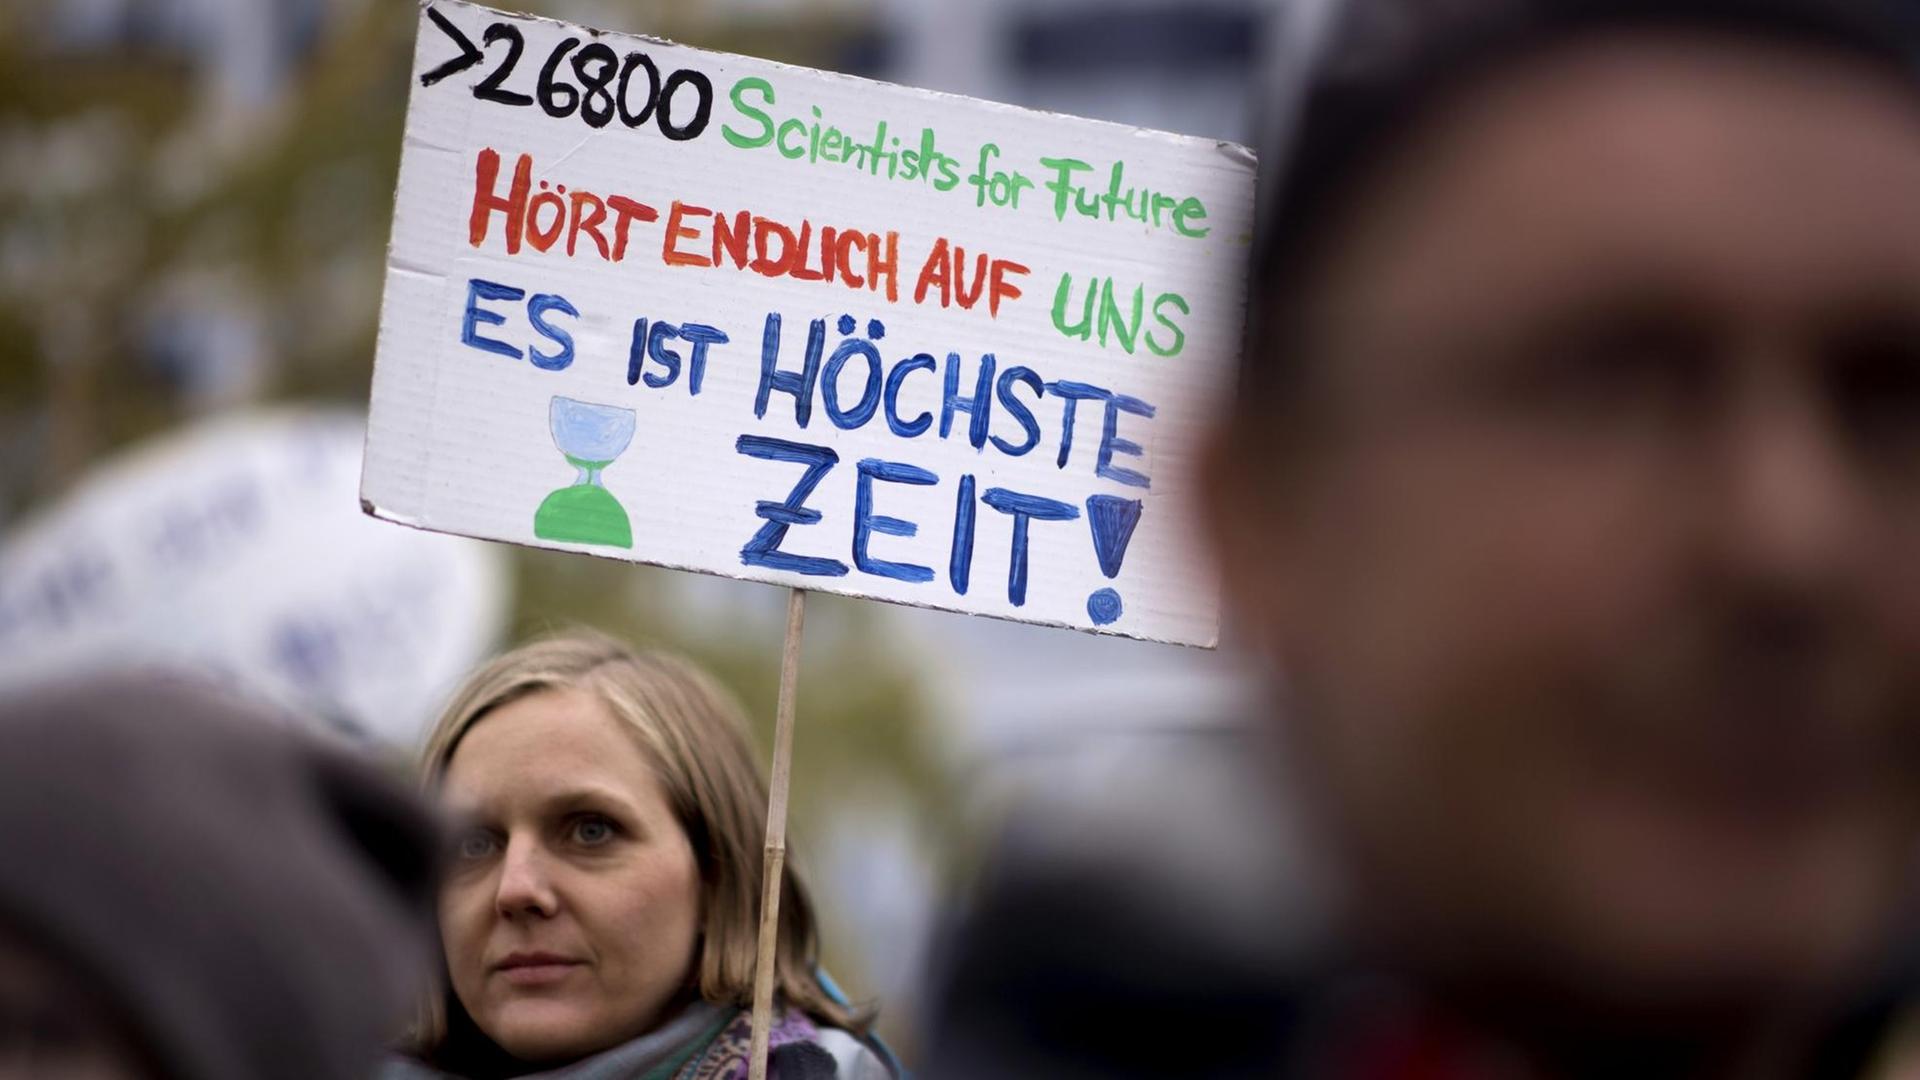 Eine Demonstrantin hält ein Schild hoch, auf dem steht: "26800 Scientists for Future: Hört endlich auf uns! Es ist höchste Zeit"